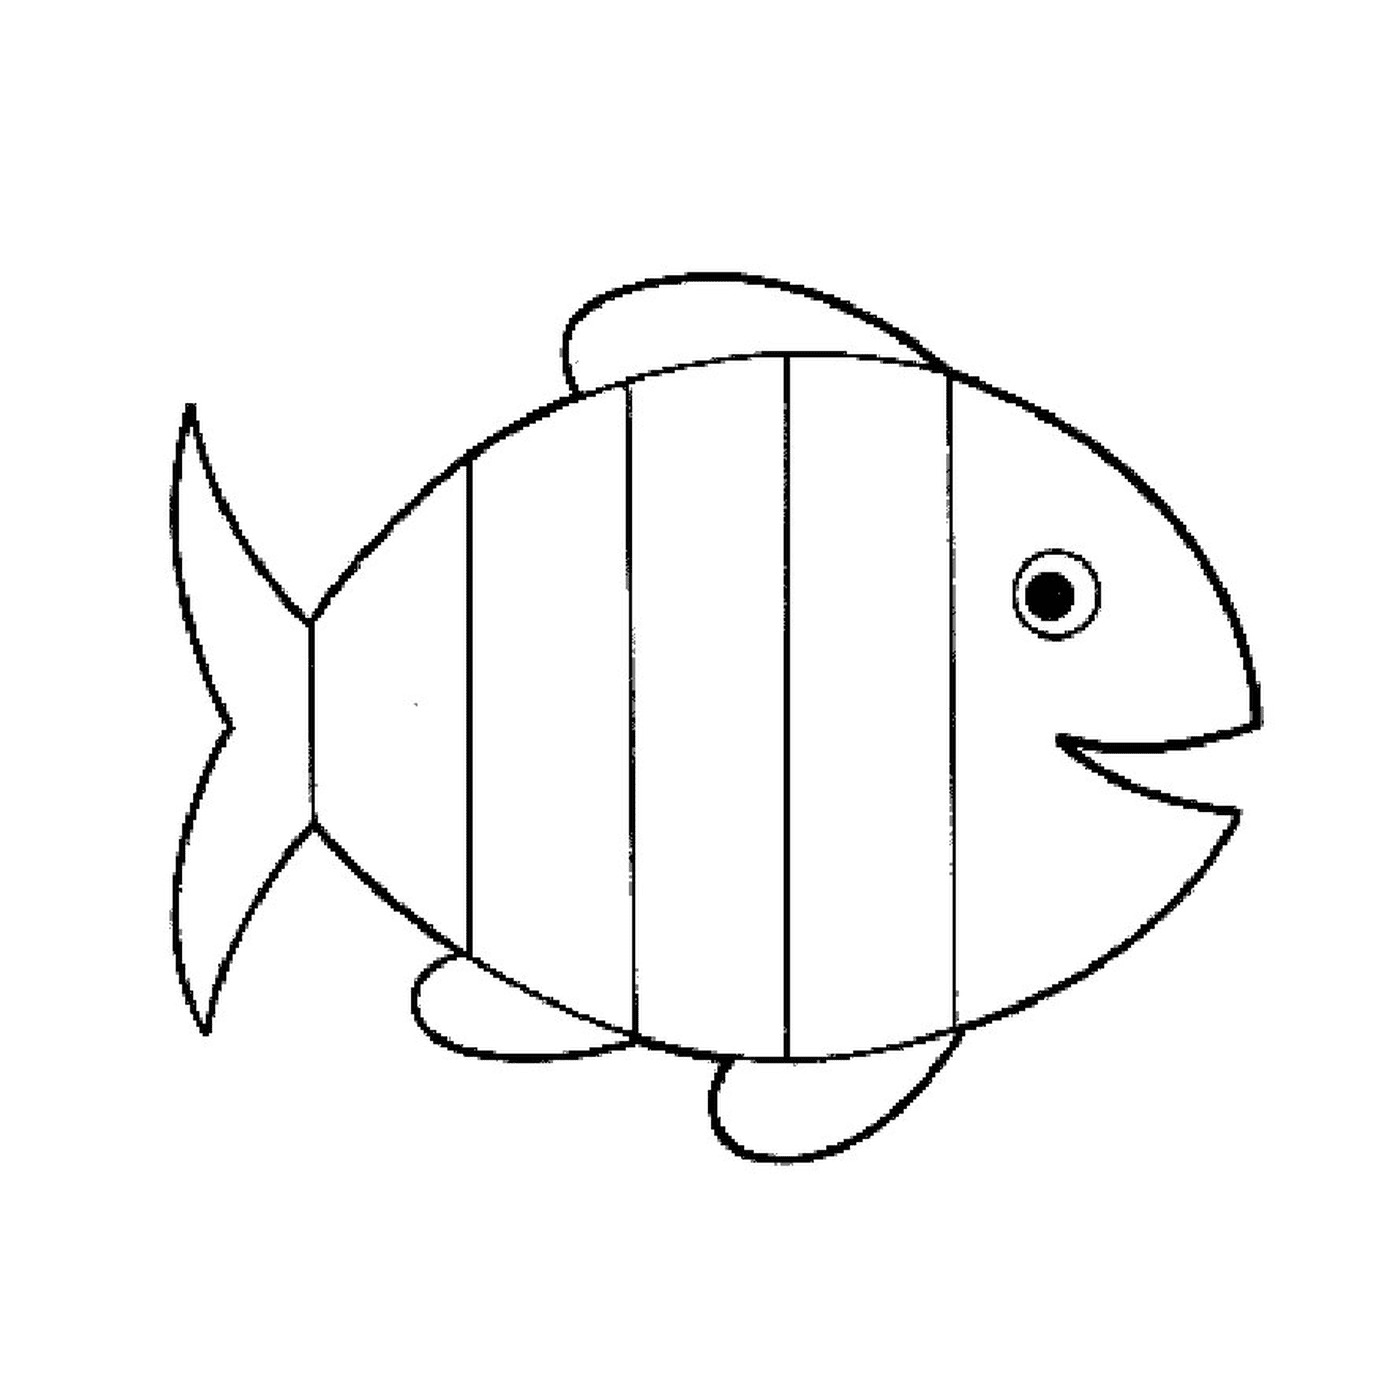   Présence d'un poisson 